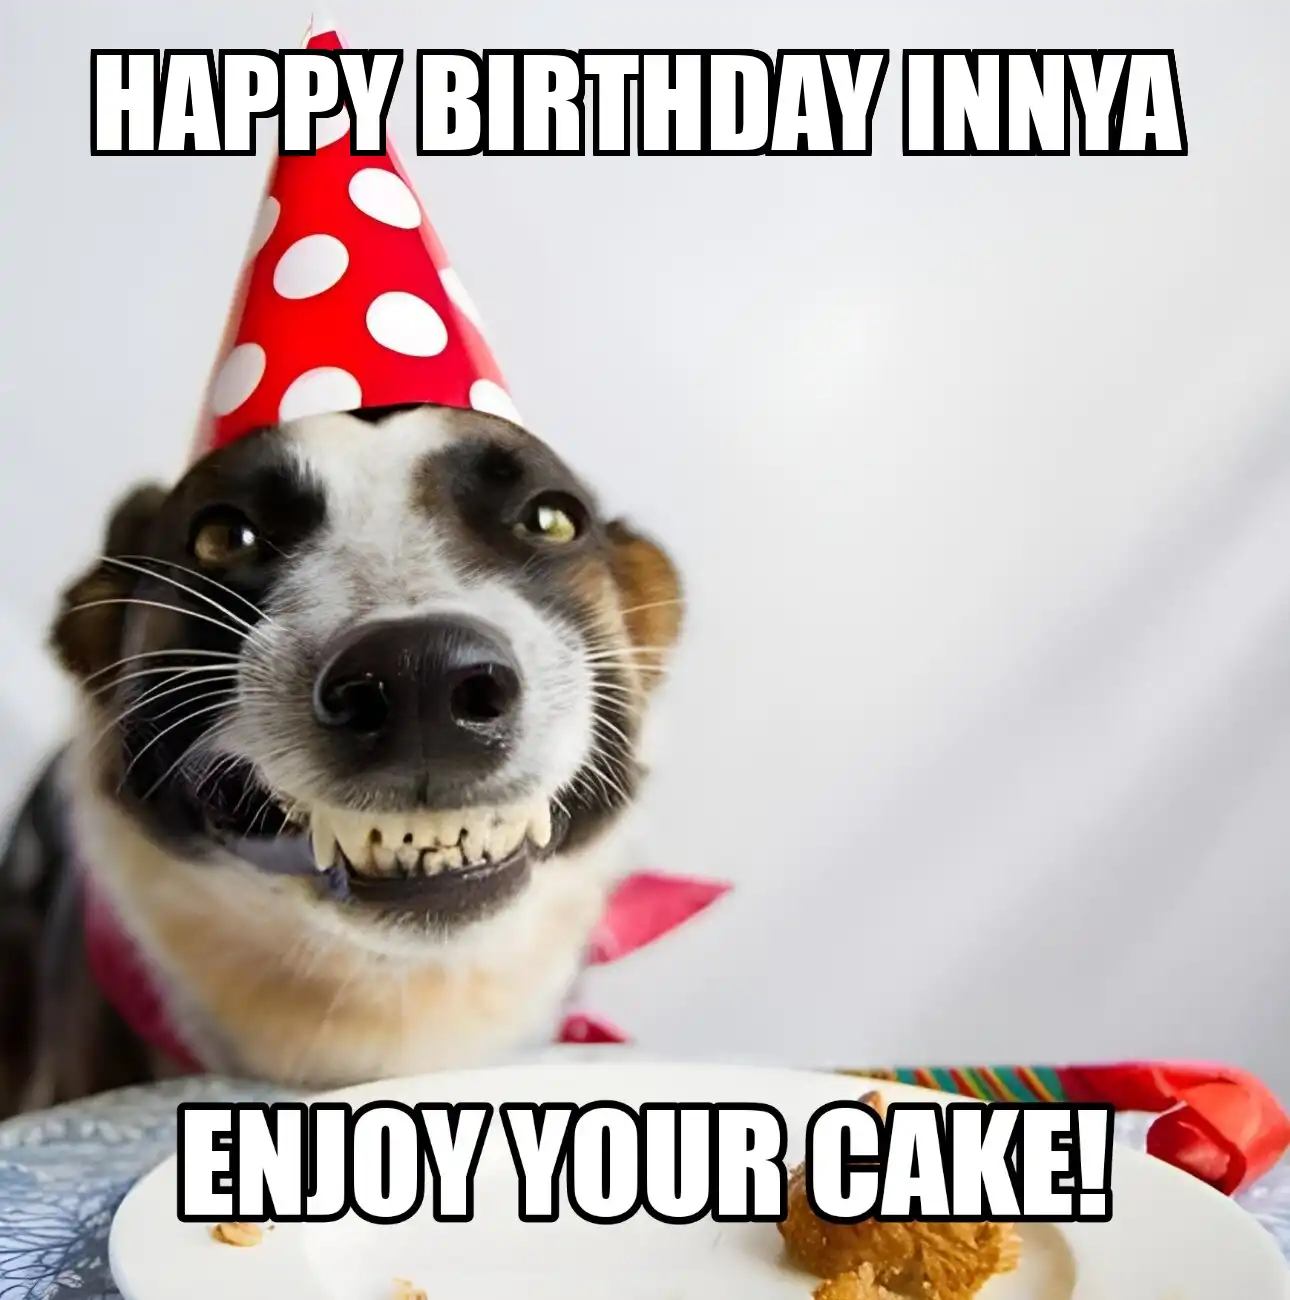 Happy Birthday Innya Enjoy Your Cake Dog Meme